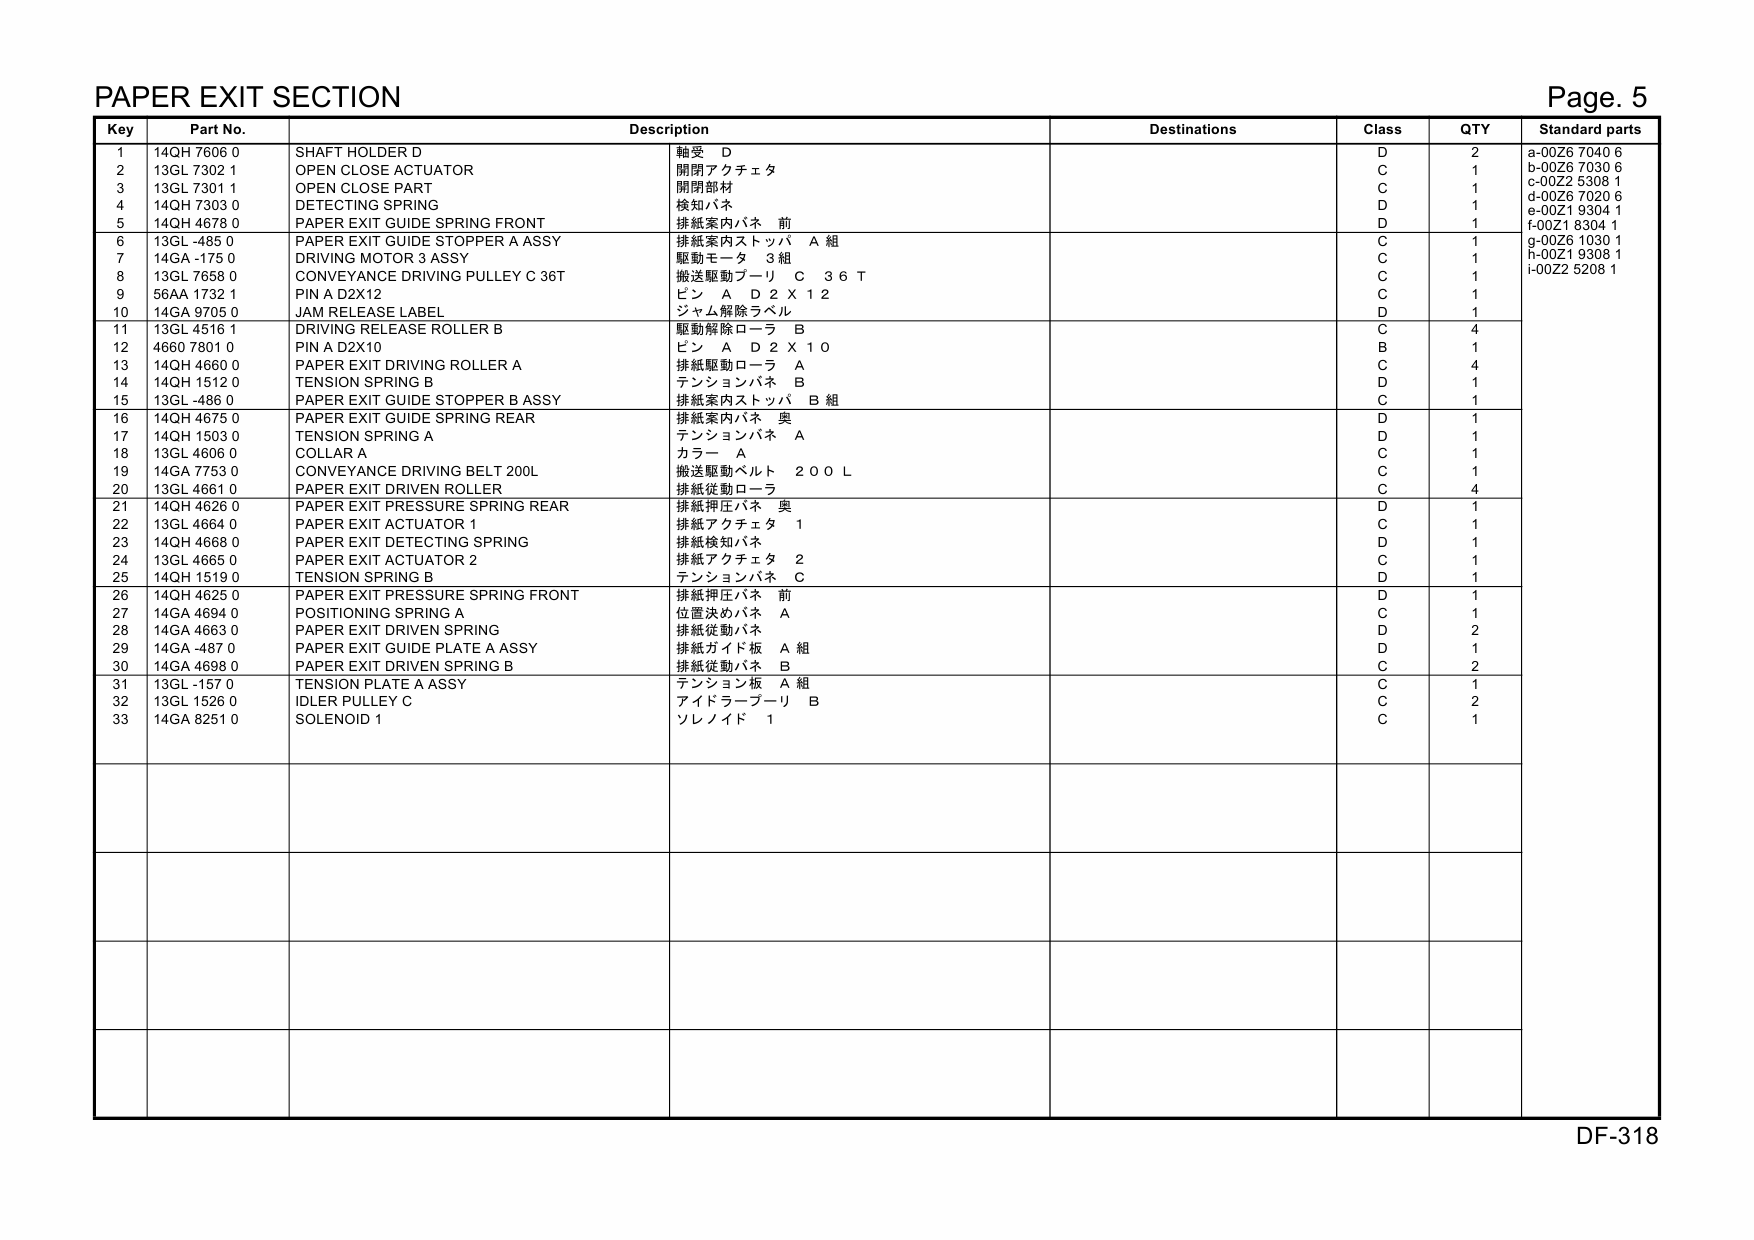 Konica-Minolta Options DF-318 14GA Parts Manual-2